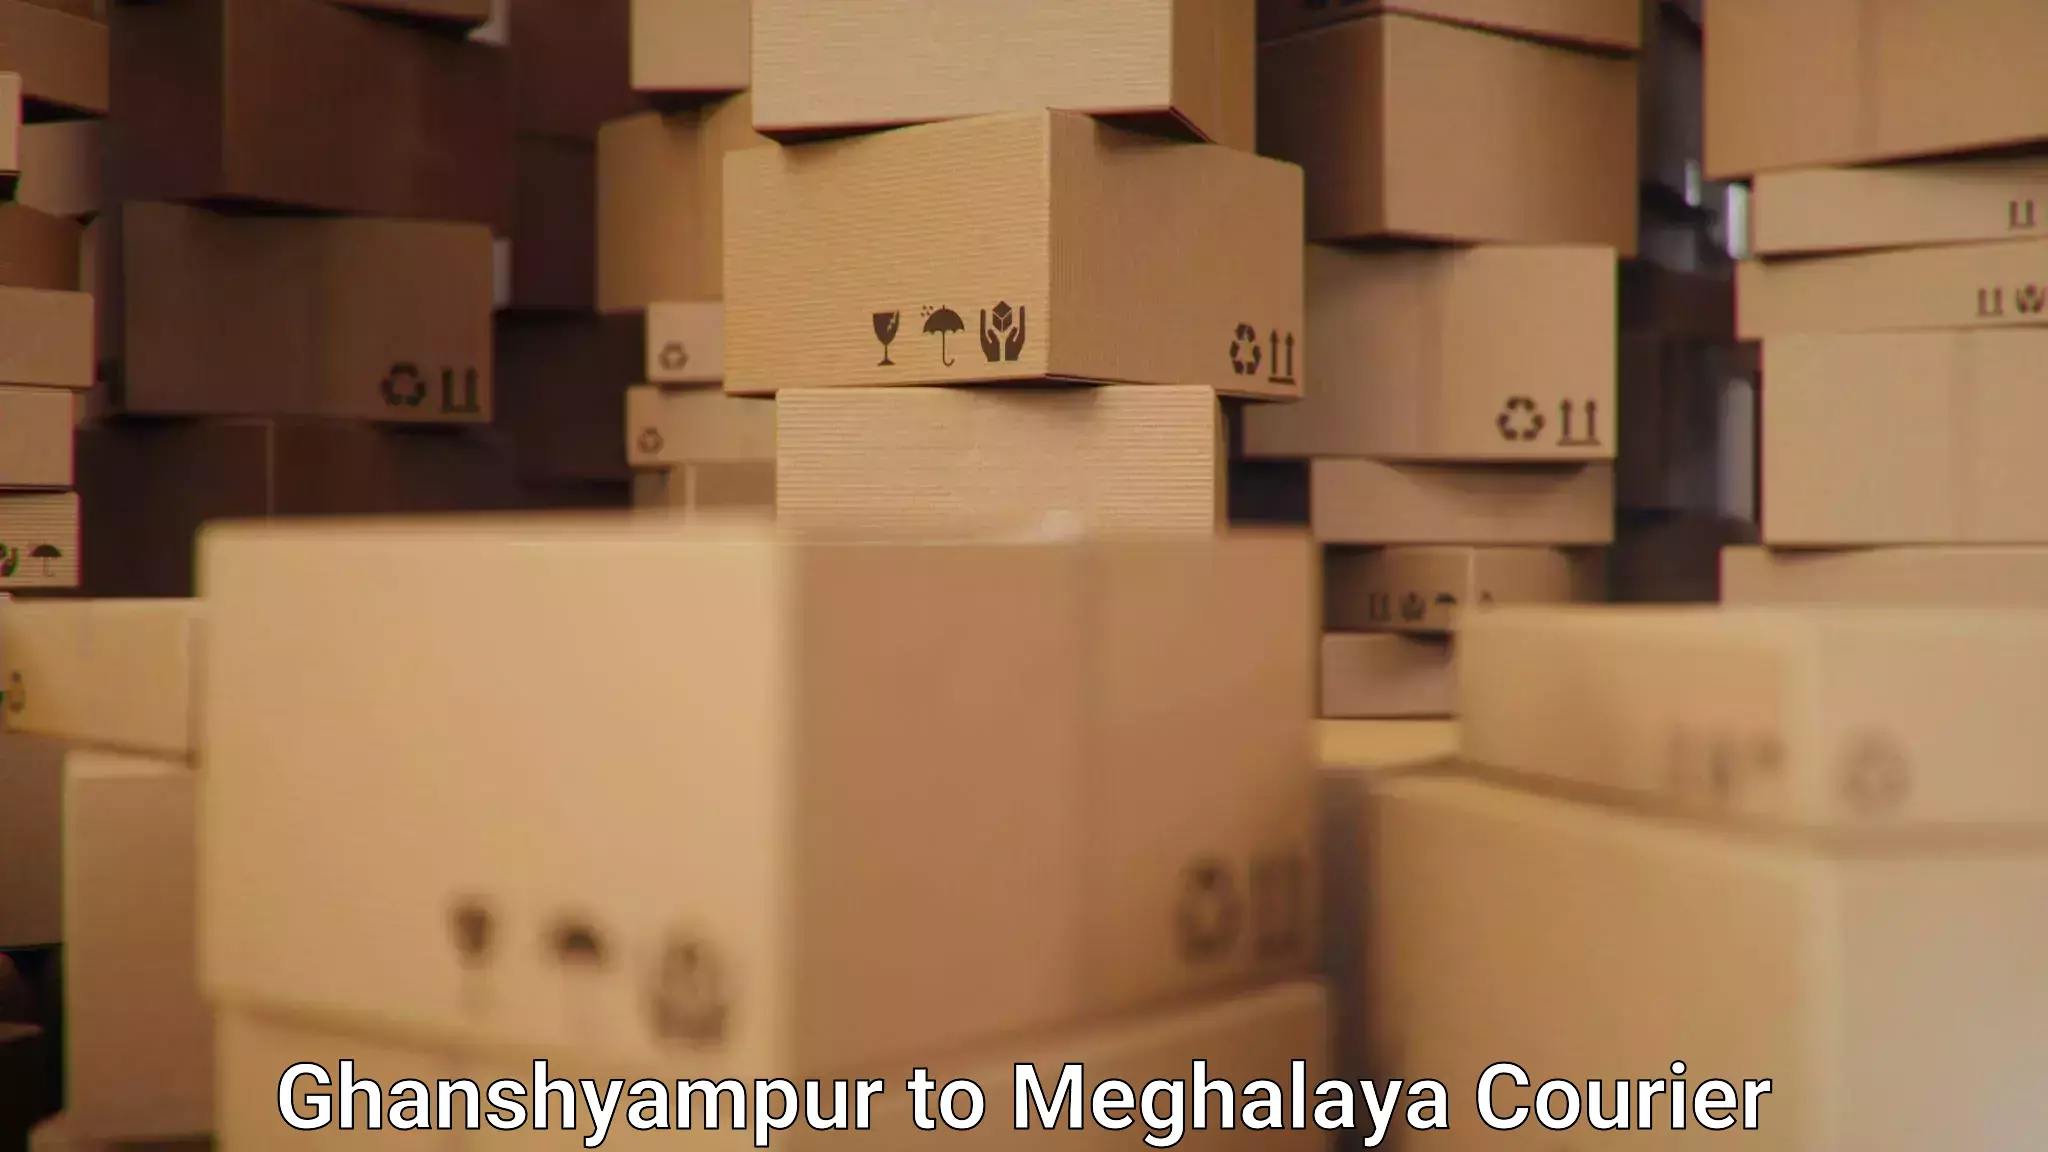 High-speed parcel service Ghanshyampur to Williamnagar